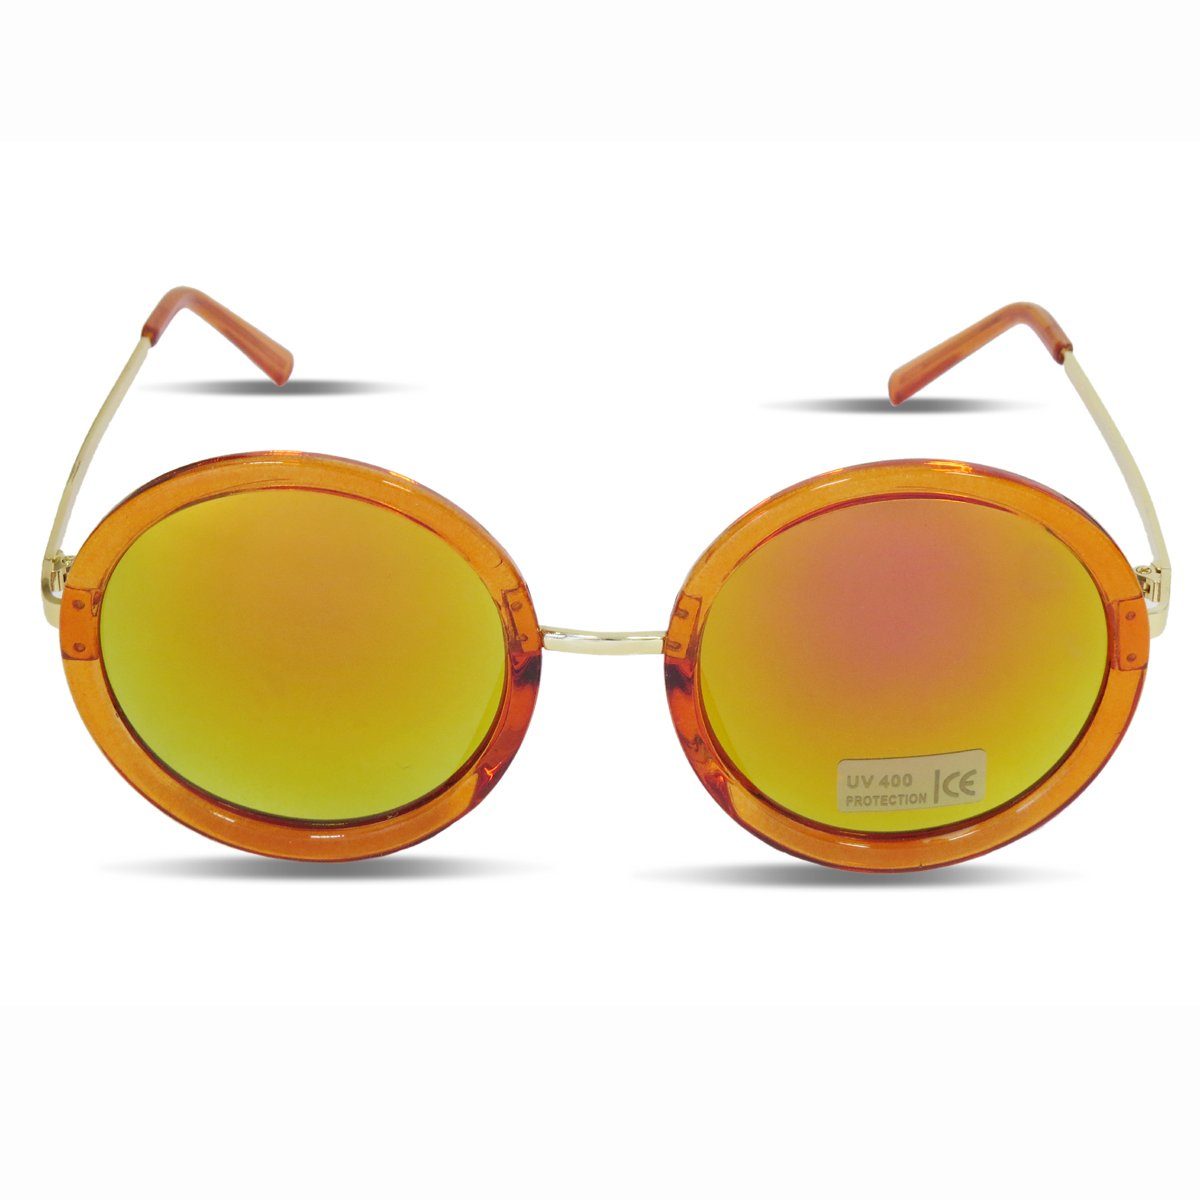 Sonia Originelli Sonnenbrille Sonnenbrille Verspiegelt Rund Damen Trend Sommer Onesize orange